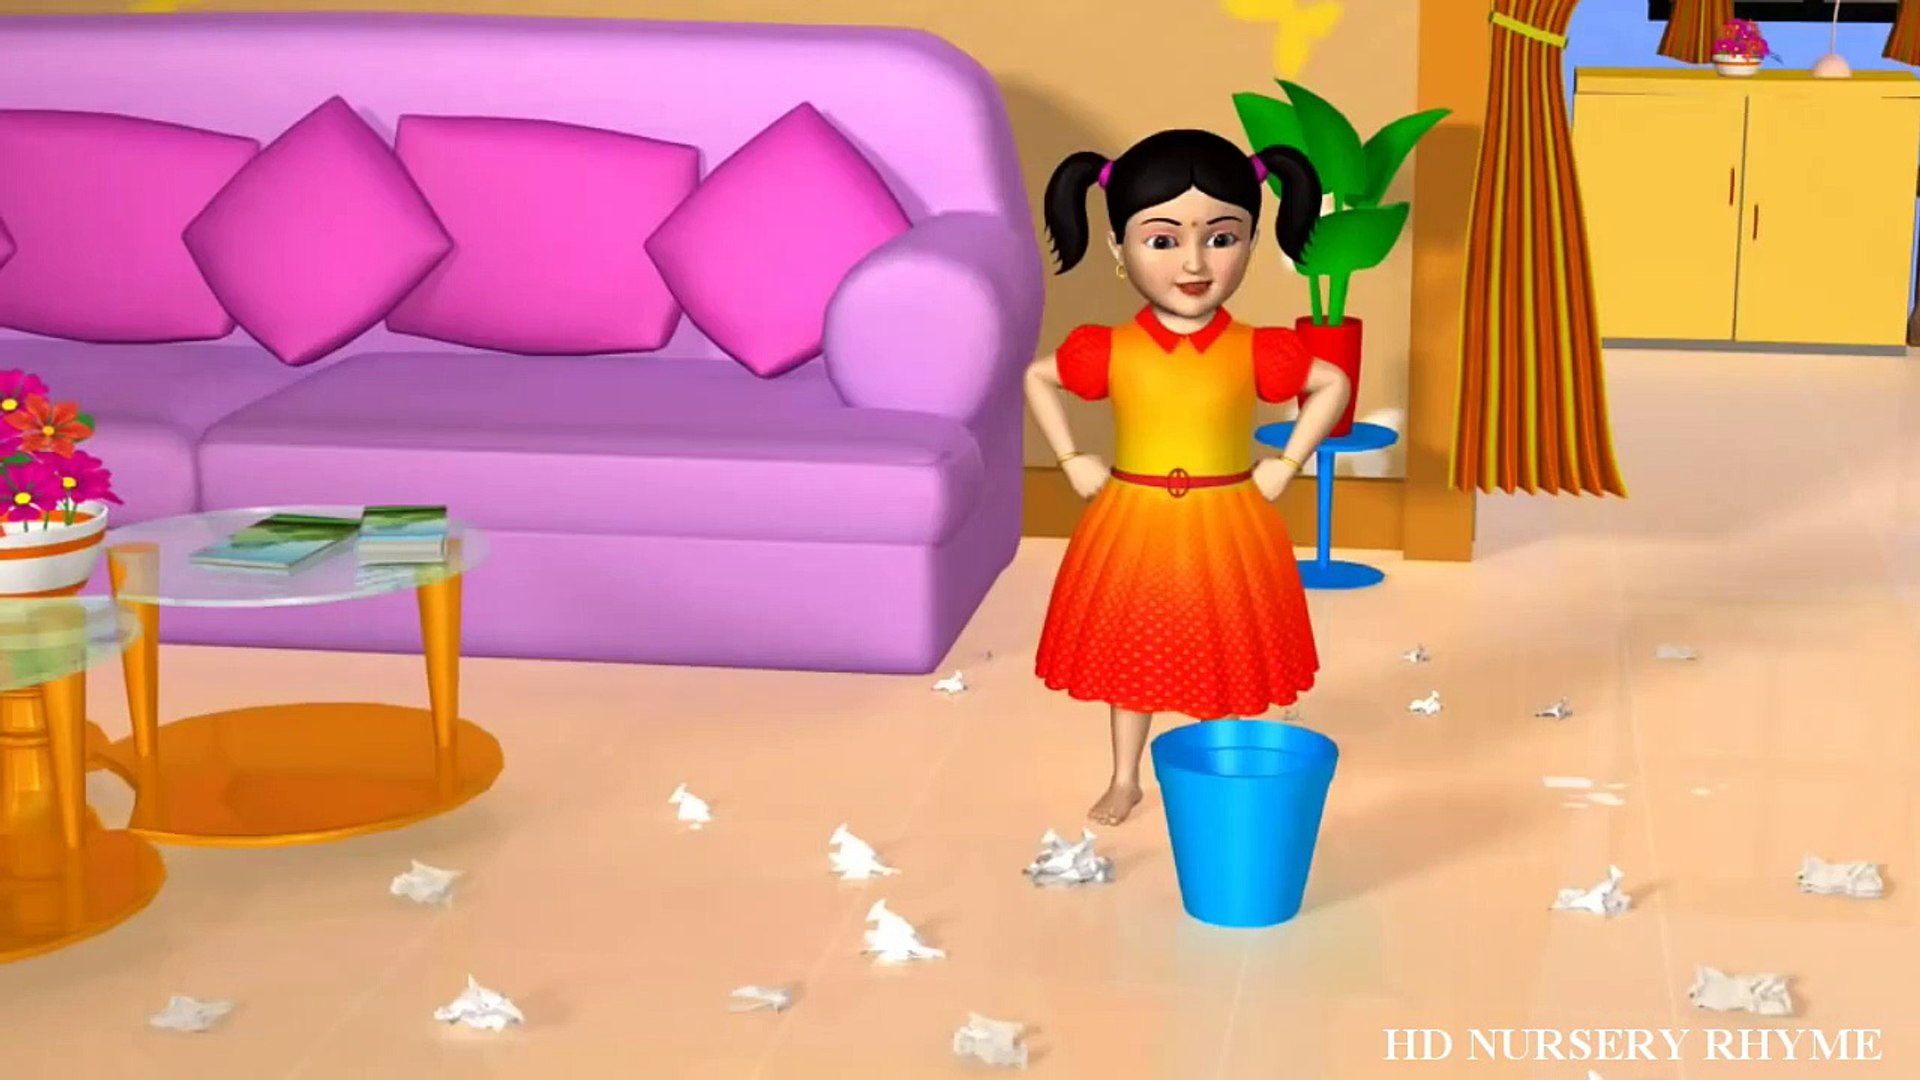 Bits of Paper | 3D Nursery Rhymes | English Nursery Rhymes | Nursery Rhymes  for Kids - video Dailymotion